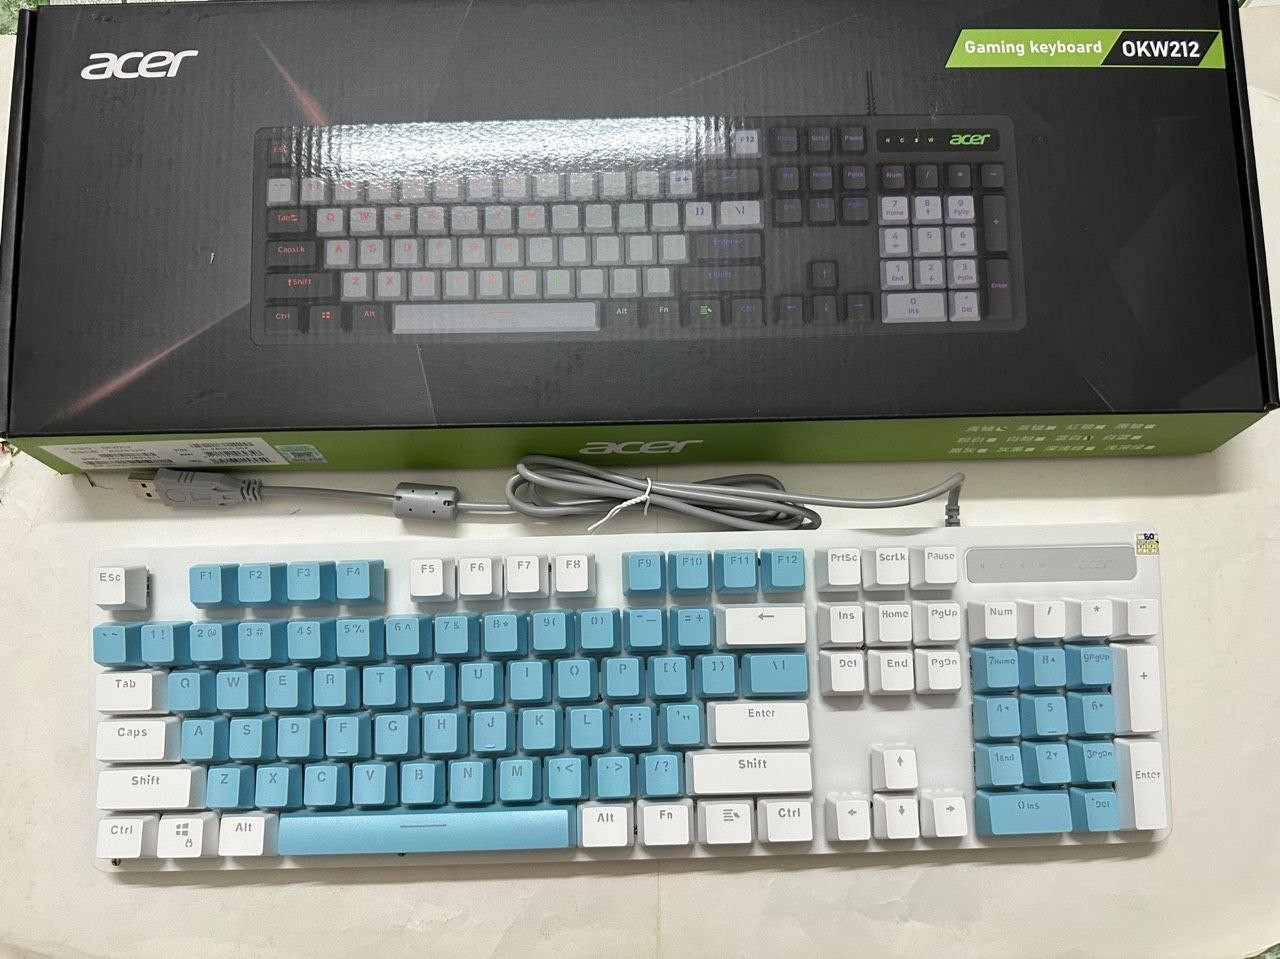 Keyboard ACER OKW-212 Blue White Công ty BH12T (Phím cơ, 104 key, Blue Switch, 16 chế độ LED)